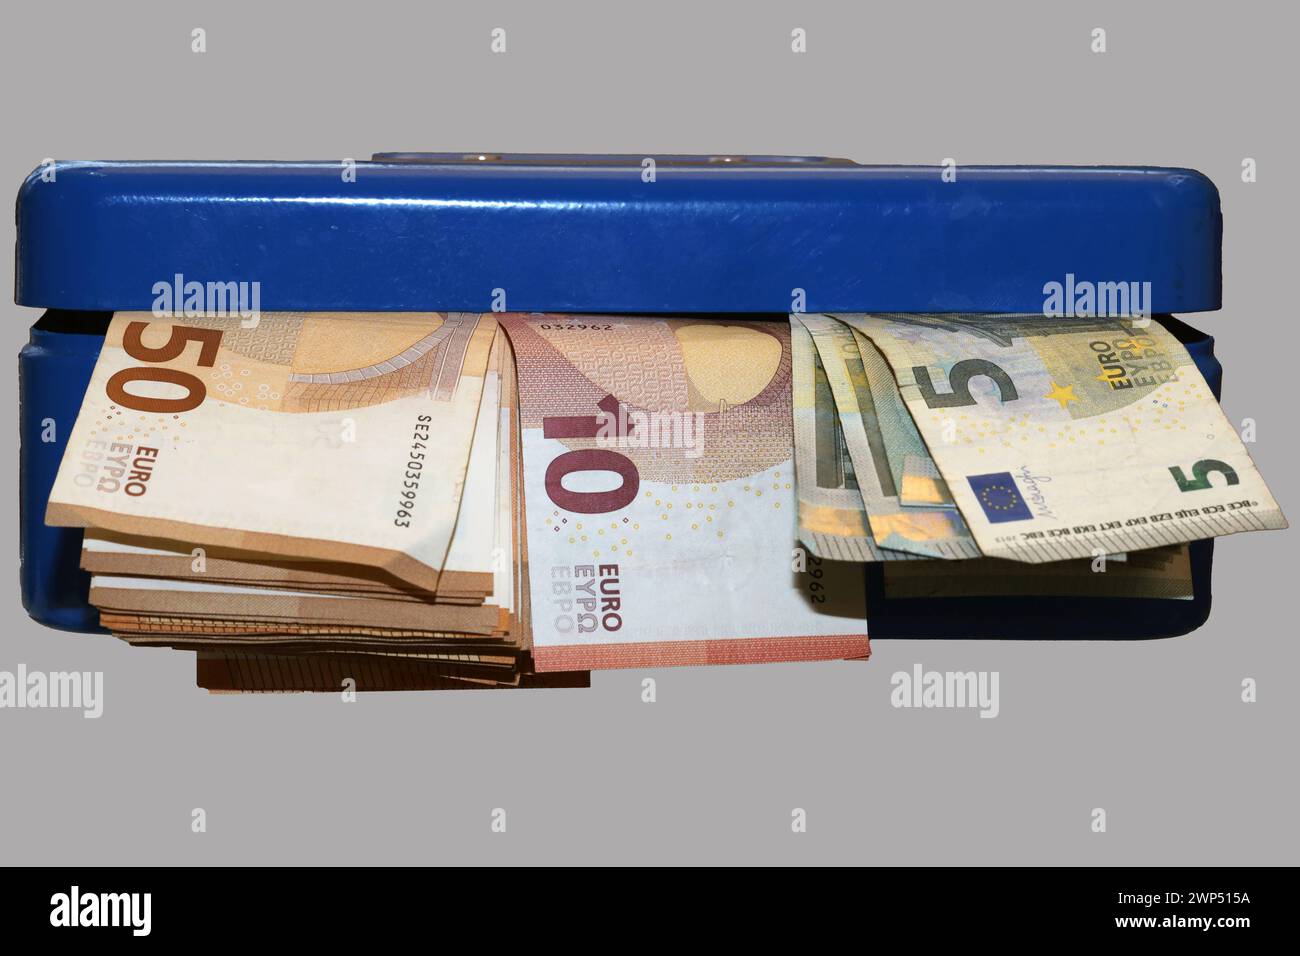 Aufbewahren von Bargeld Geldscheine in einer blauen Geldkassette **** immagazzinamento di banconote in contanti in una cassa blu Foto Stock